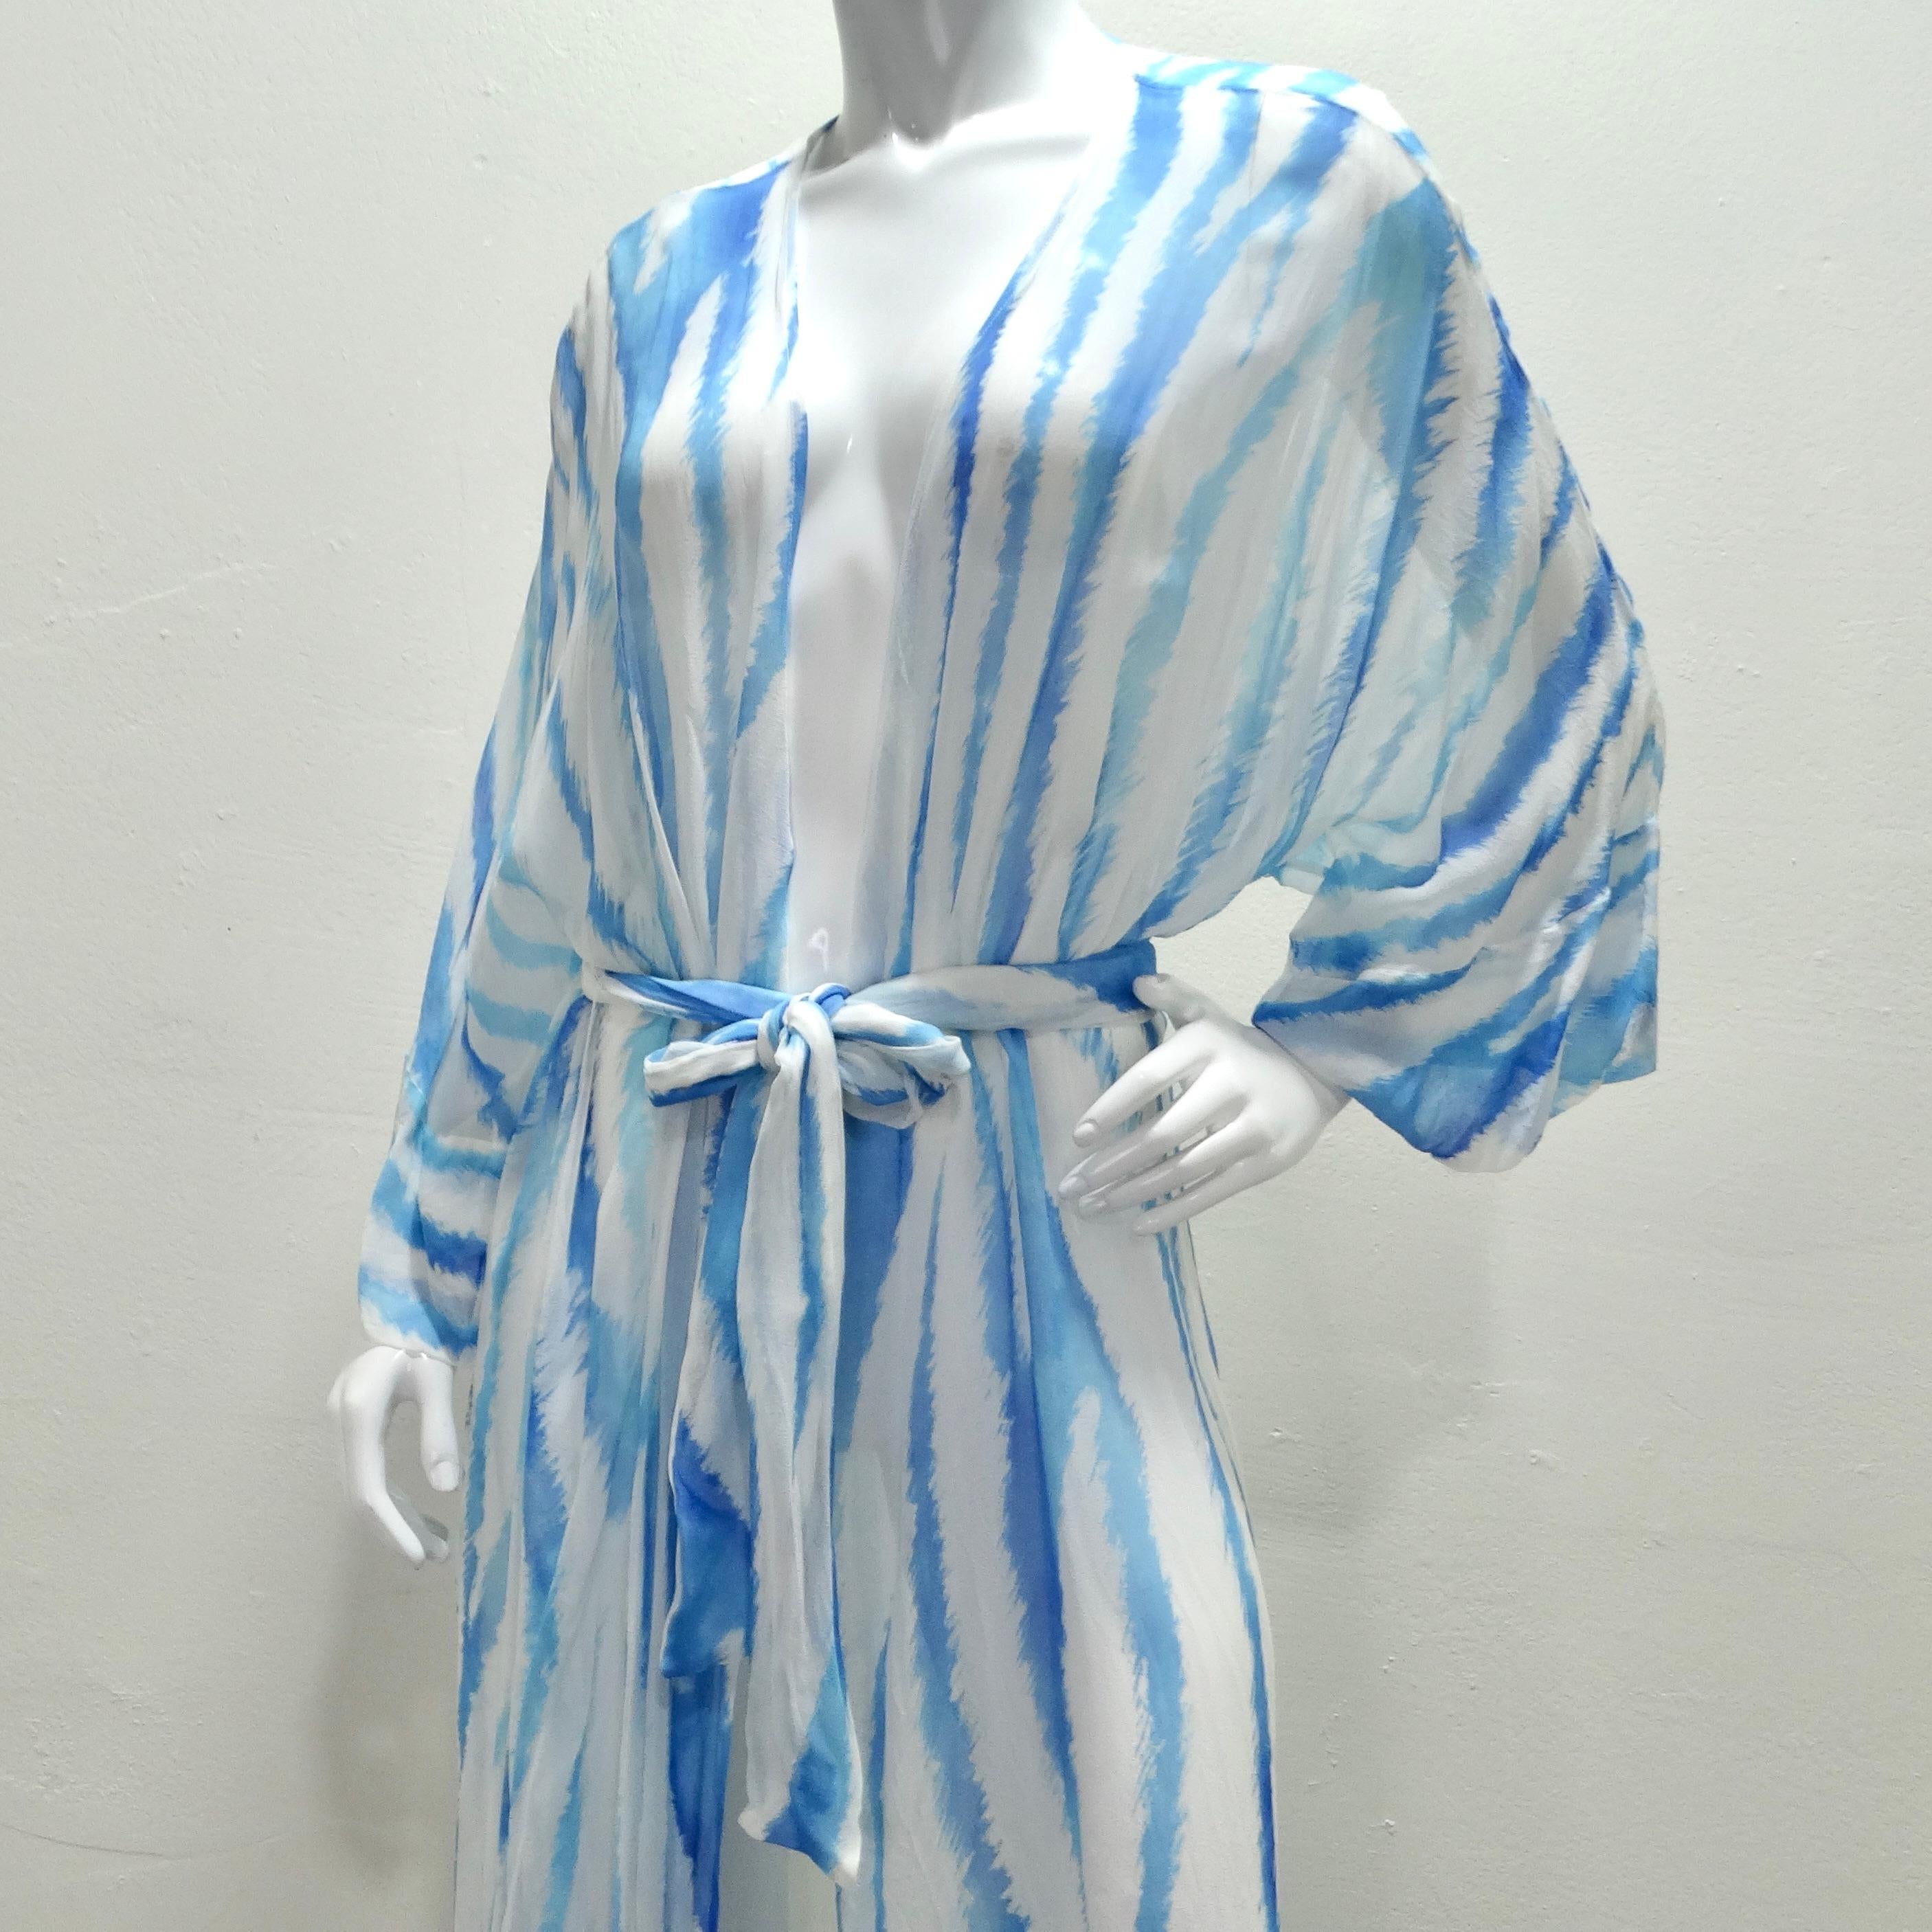 Die atemberaubende Retrofete Blue Zebra Silk Chiffon Robe ist ein vielseitiges und luxuriöses Kleidungsstück, das mühelos vom Strandschick zum Abendglamour übergeht. Diese luftige Maxi-Silhouette aus hauchdünnem Seidenchiffon strahlt Eleganz und